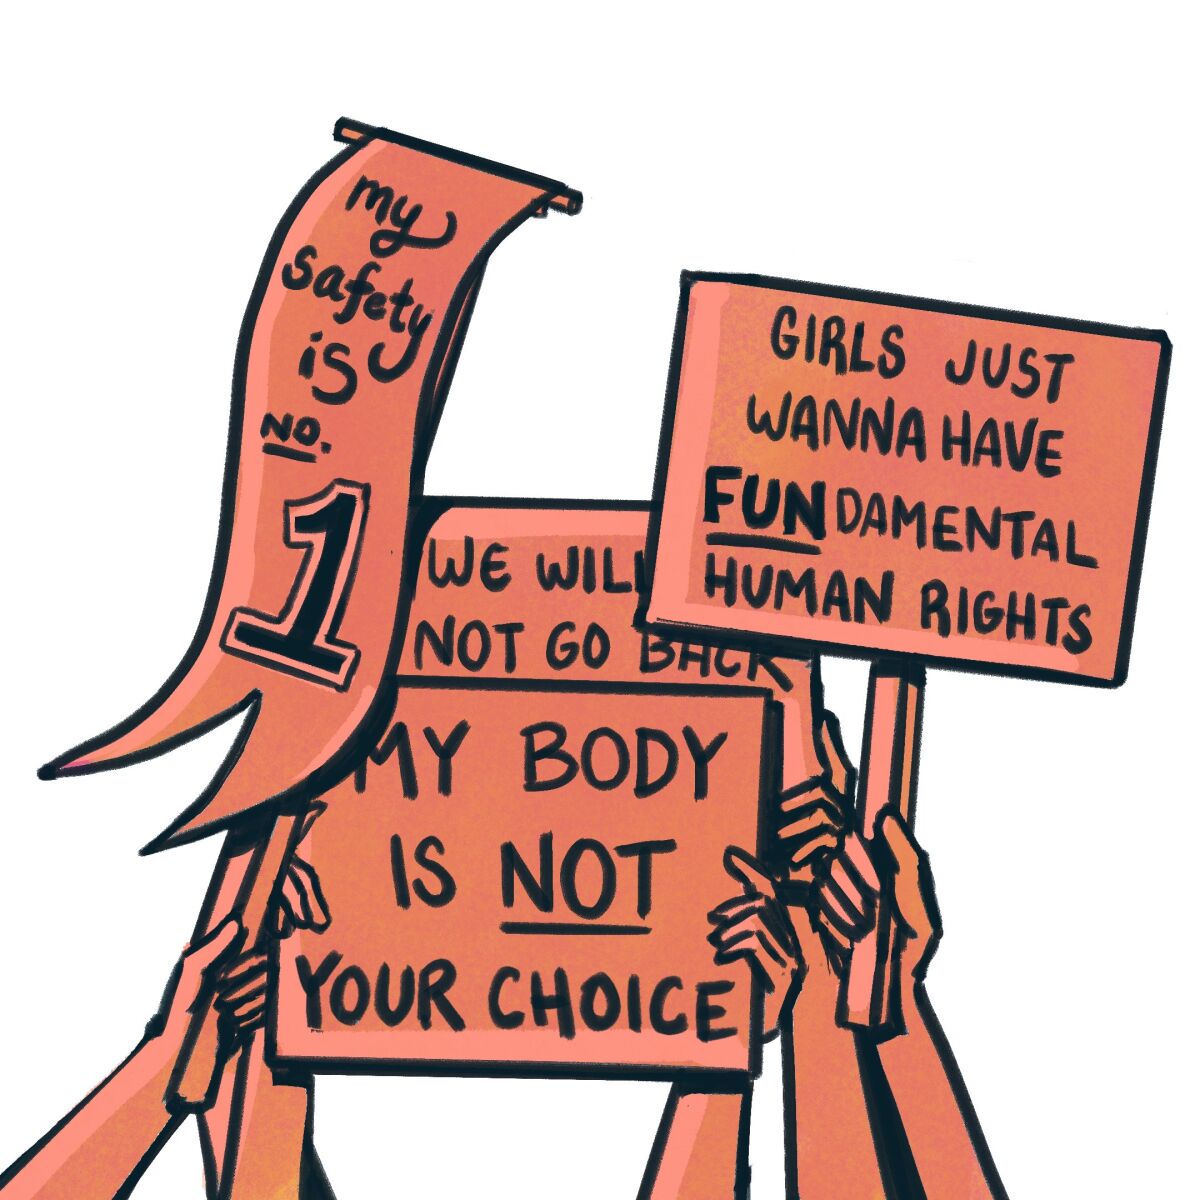 Ilustración de varias manos sosteniendo carteles de protesta con mensajes como "Mi cuerpo no es tu elección"